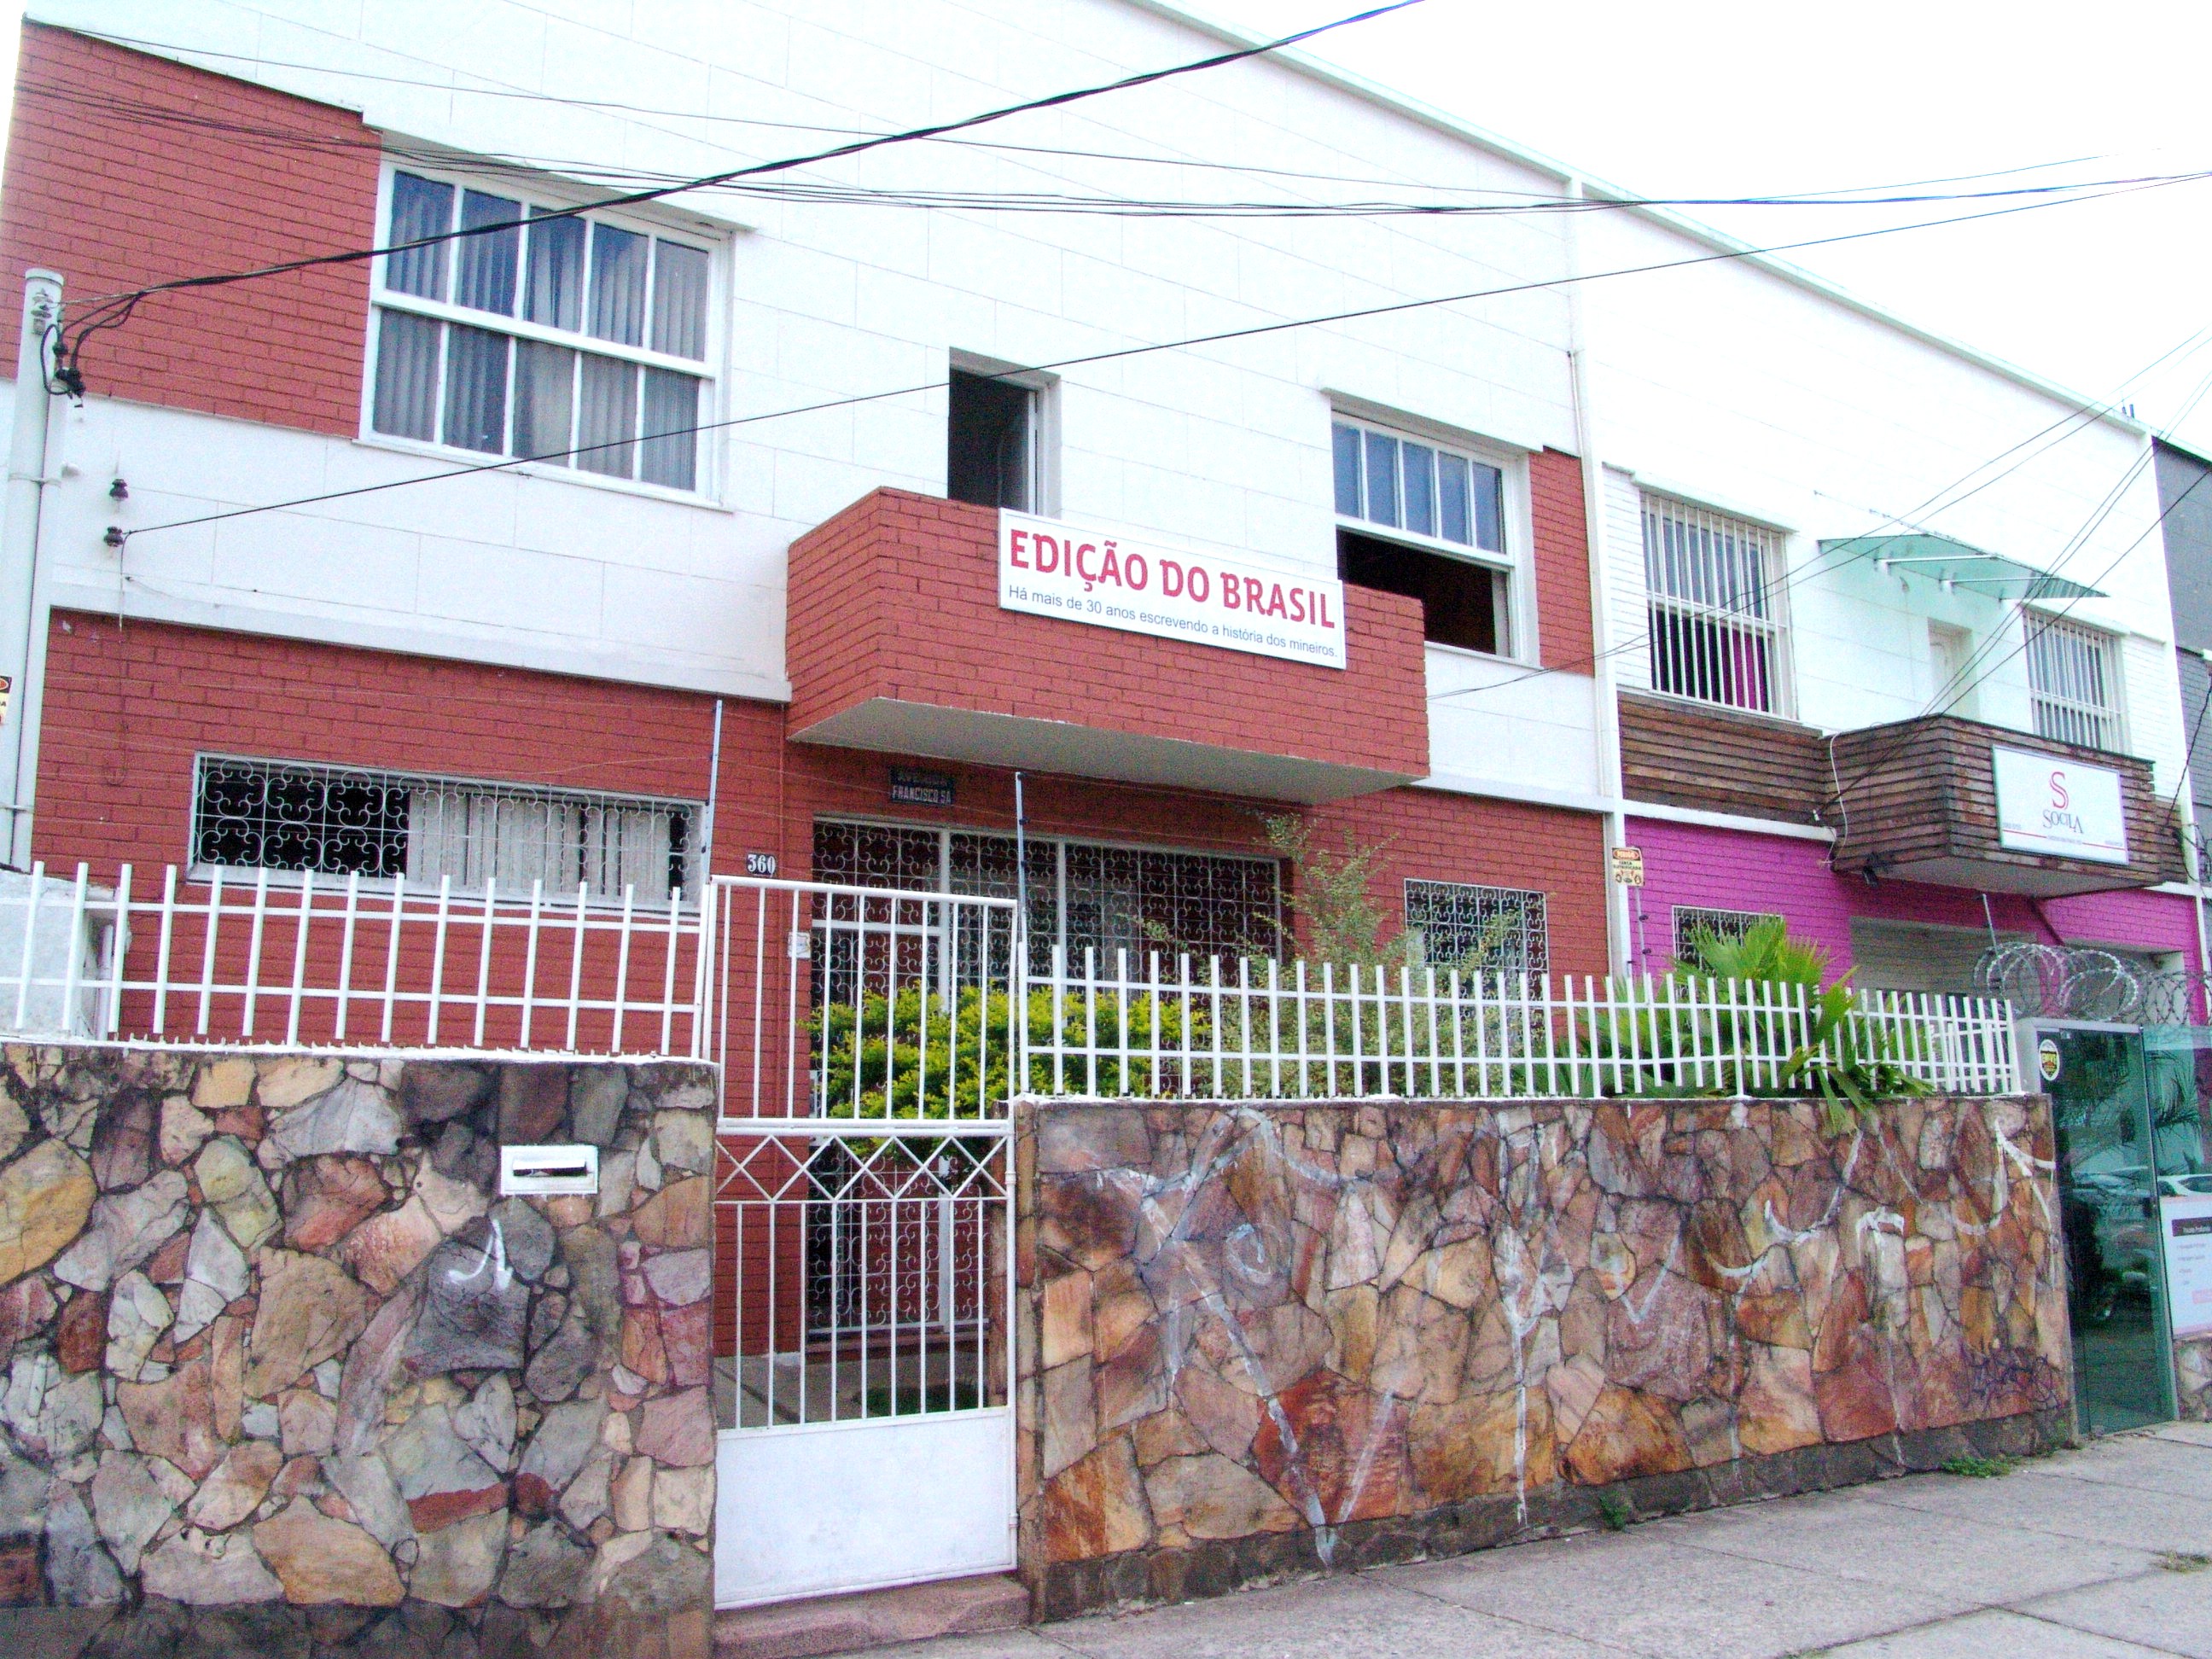 Sede do jornal fica no Prado, um dos mais tradicionais bairros de Belo Horizonte